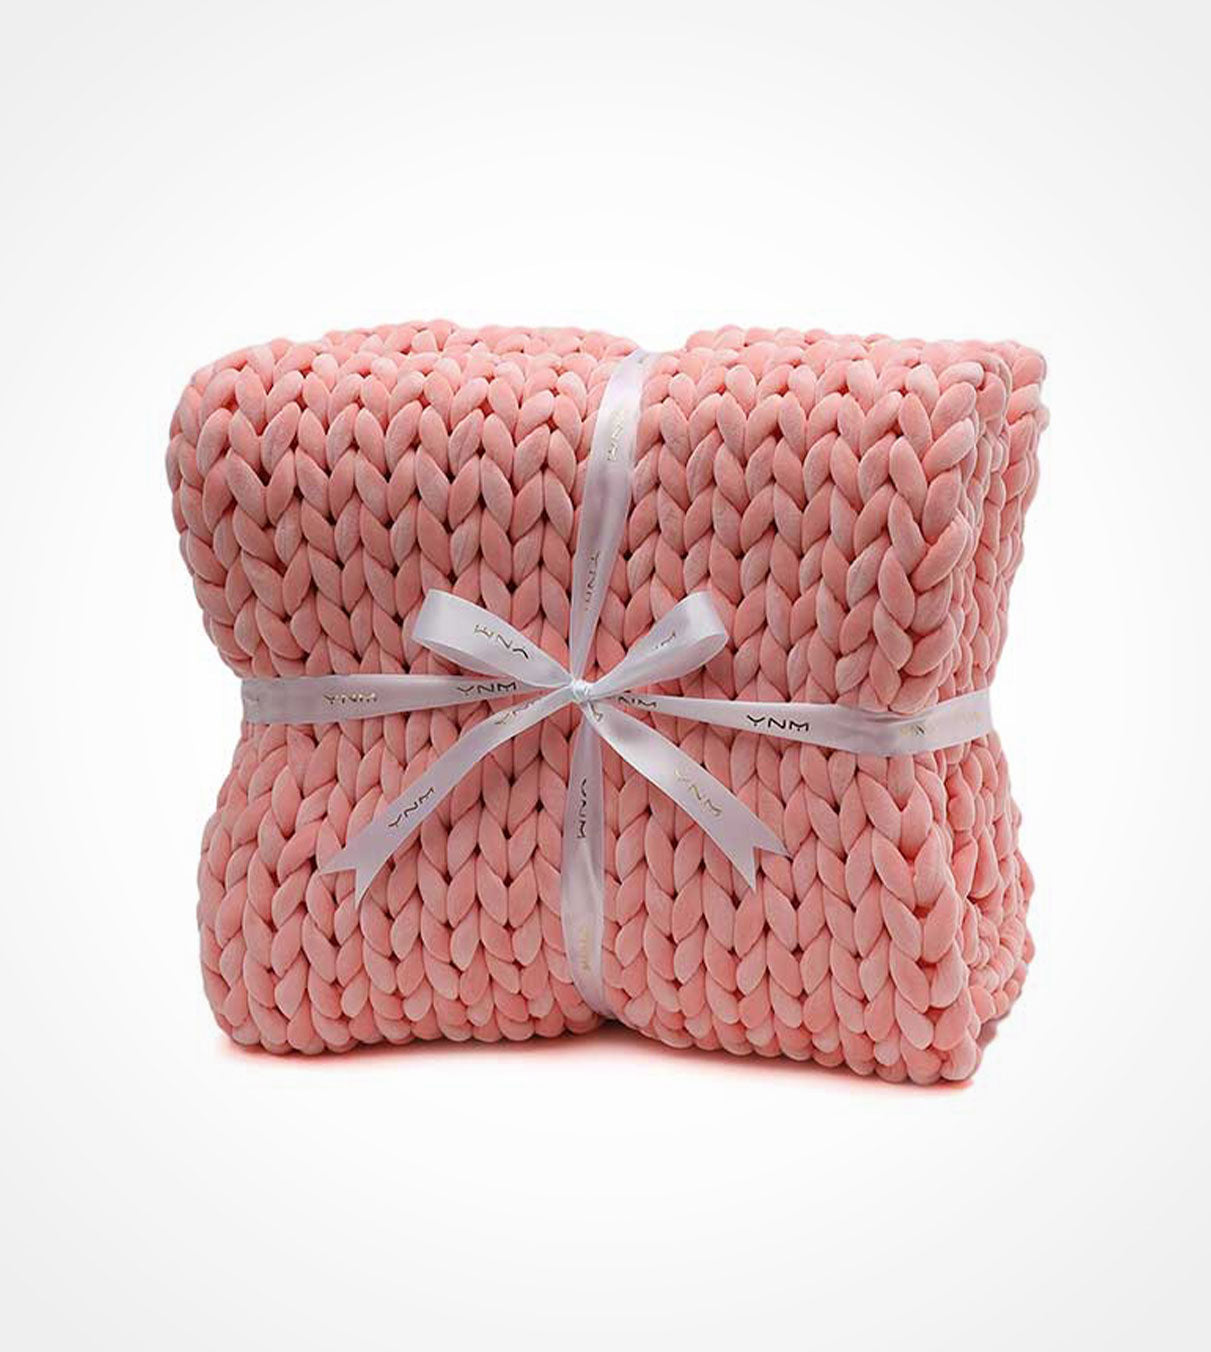 Product: Knitted Velvet Weighted Blanket | Color: Velvet Pink Blossom